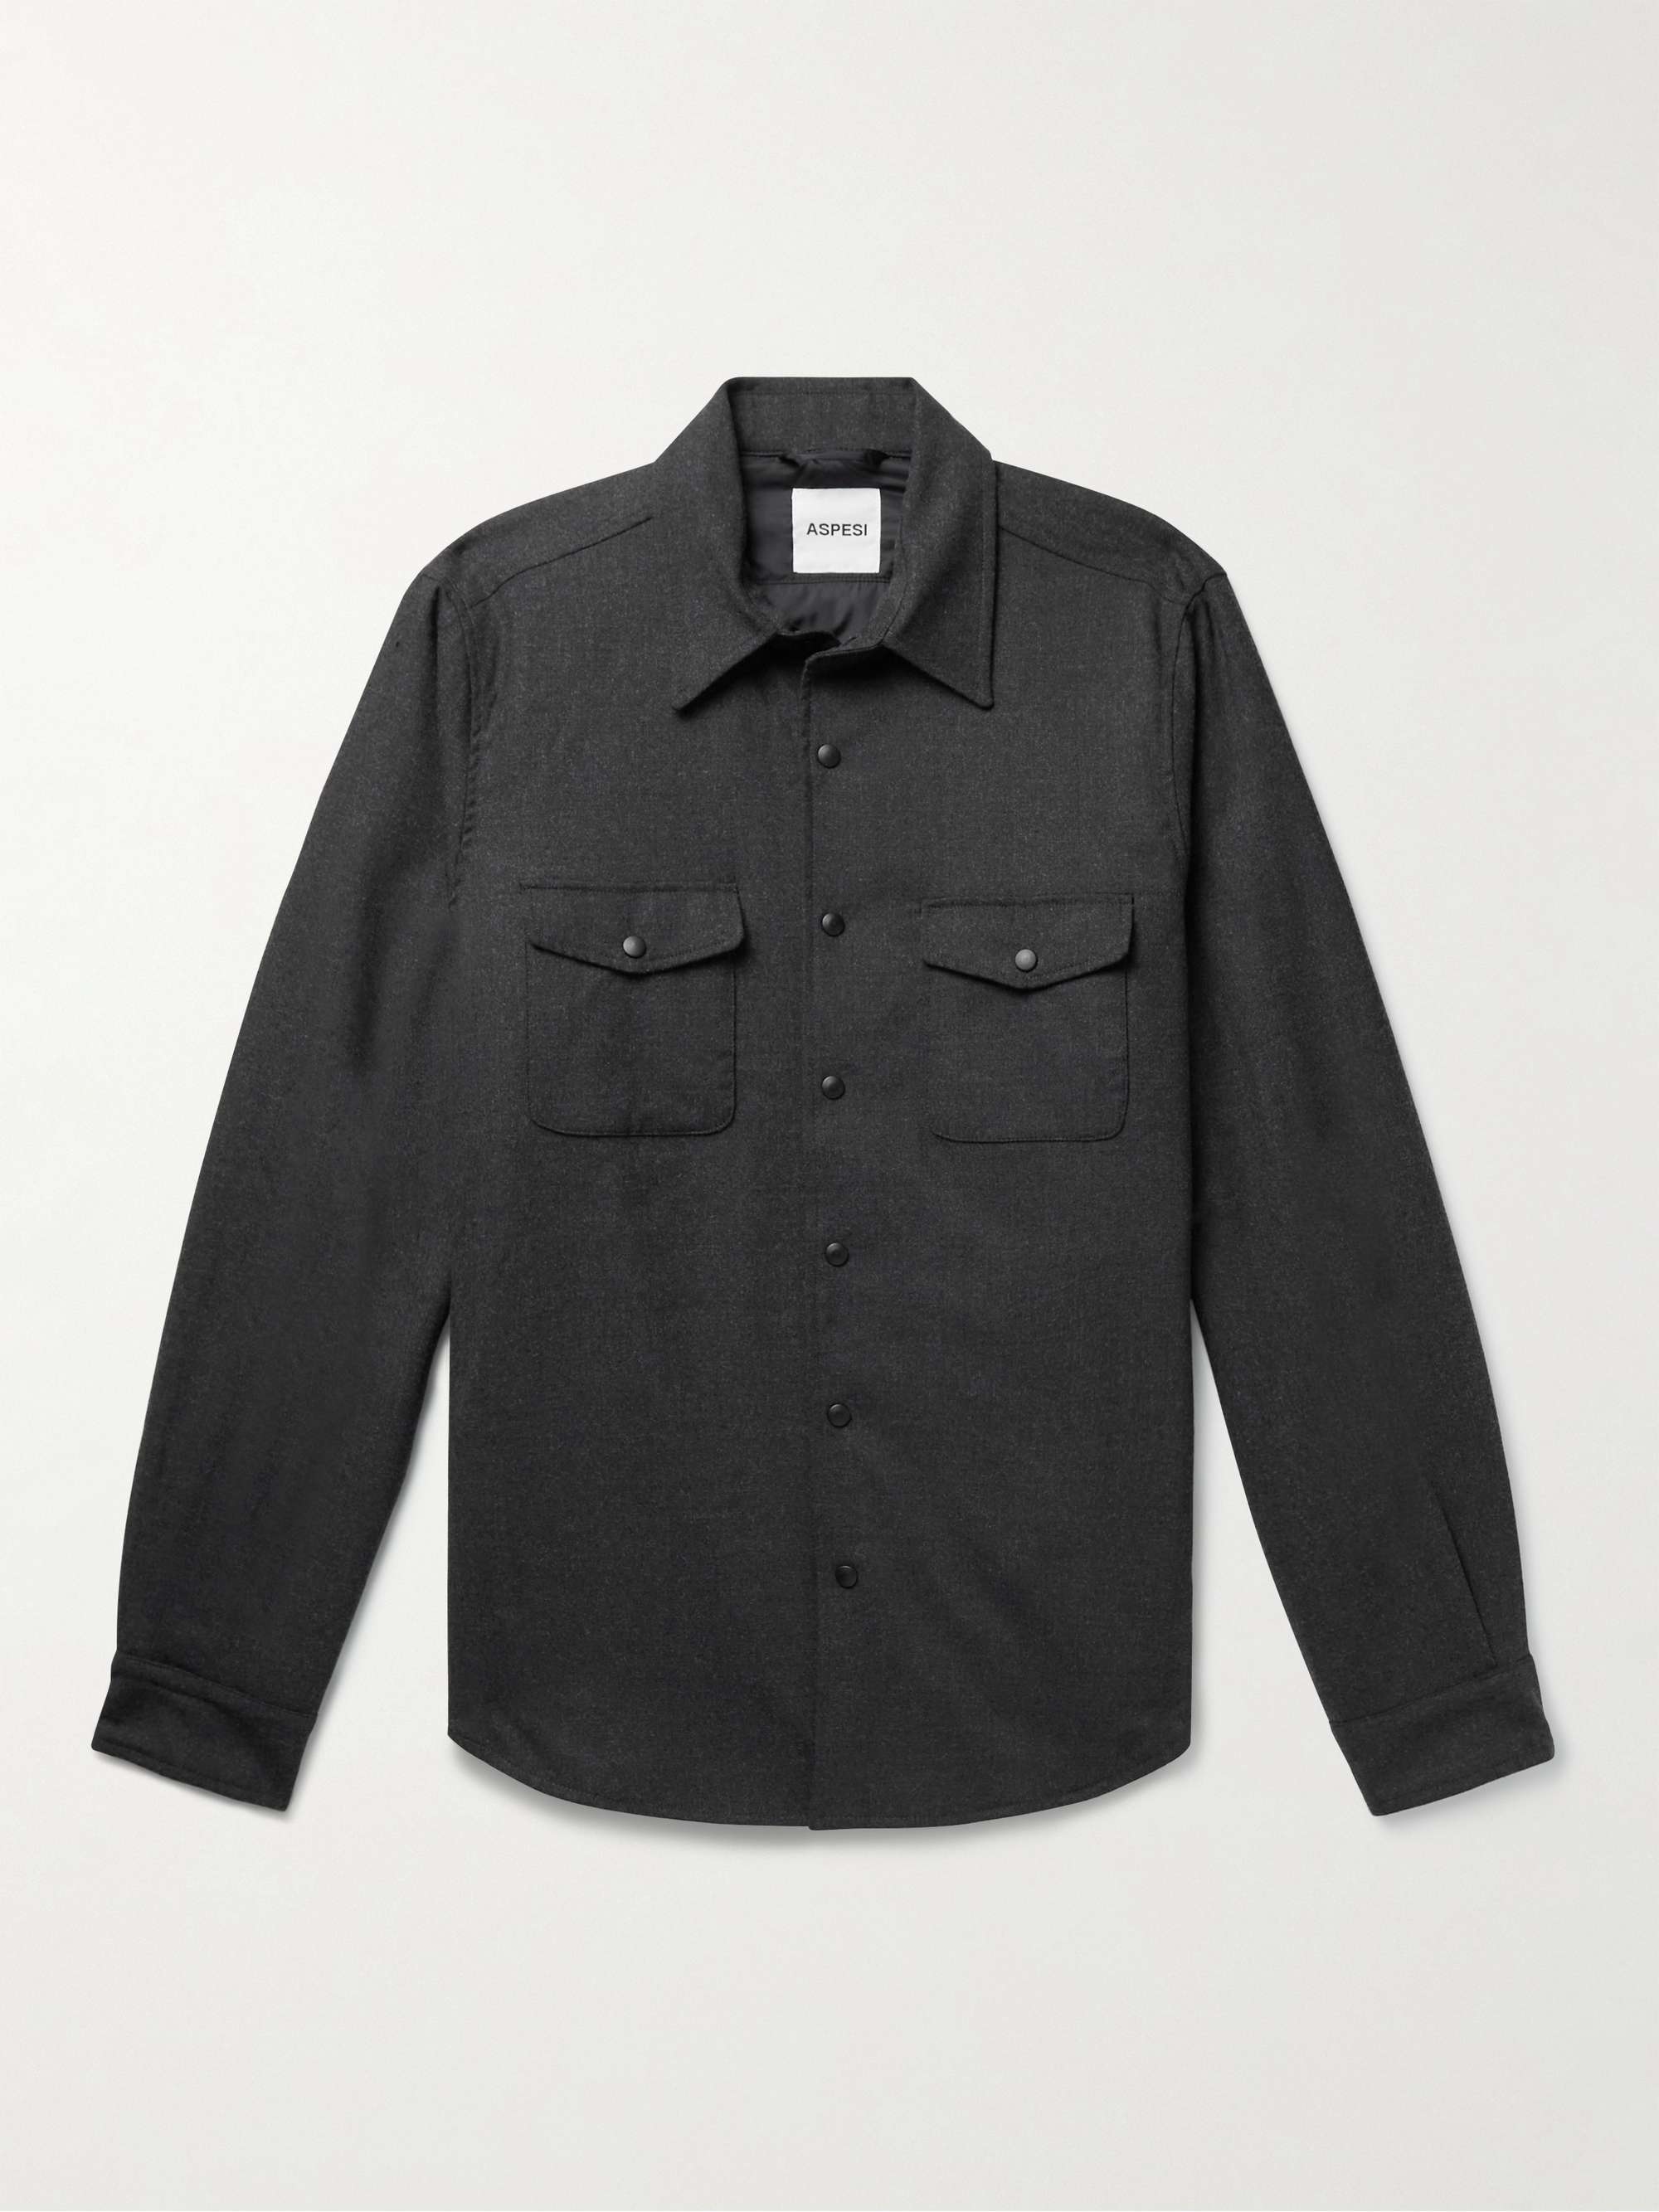 ASPESI Wool-Blend Overshirt for Men | MR PORTER